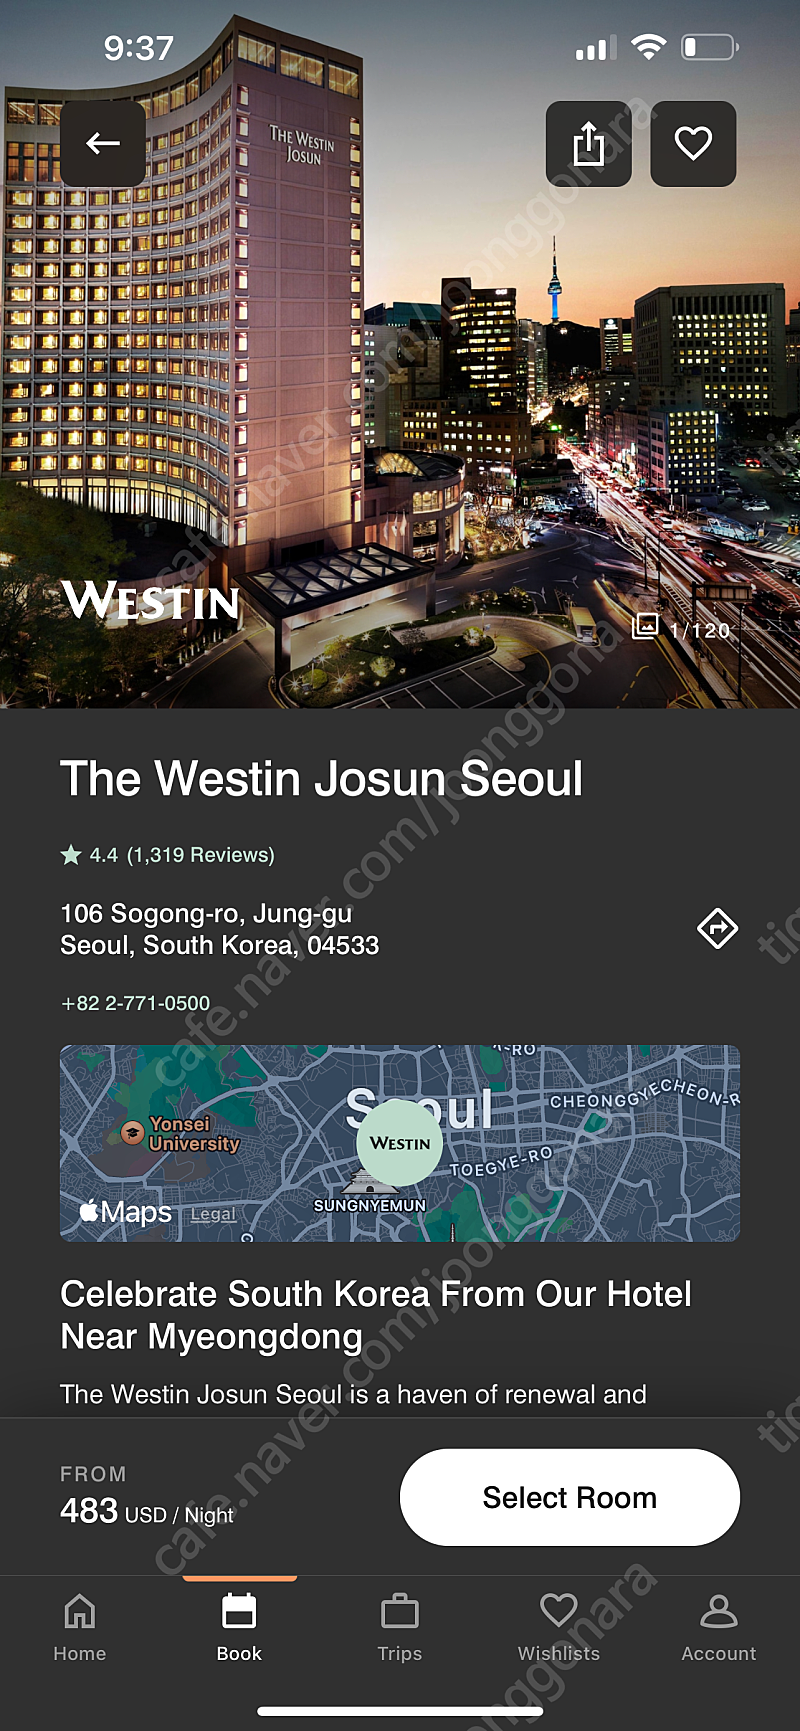 서울 특급호텔 호캉스 숙박권 판매 (고객등급이 높아서 조식, 라운지 이용, 4시 체크아웃 가능합니다)